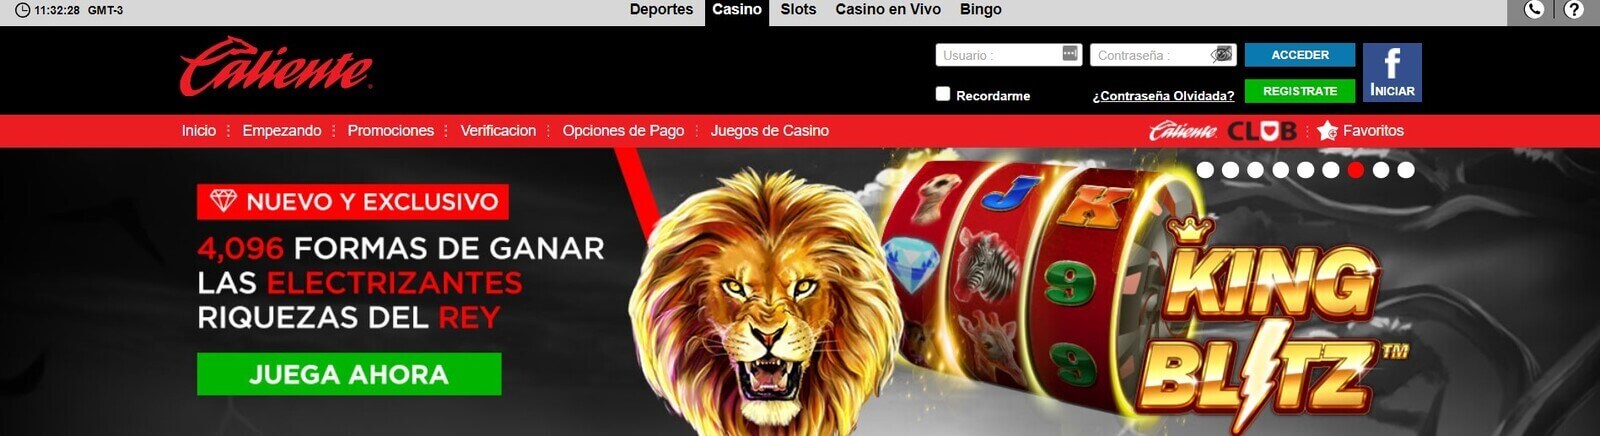 Página web de Caliente Casino